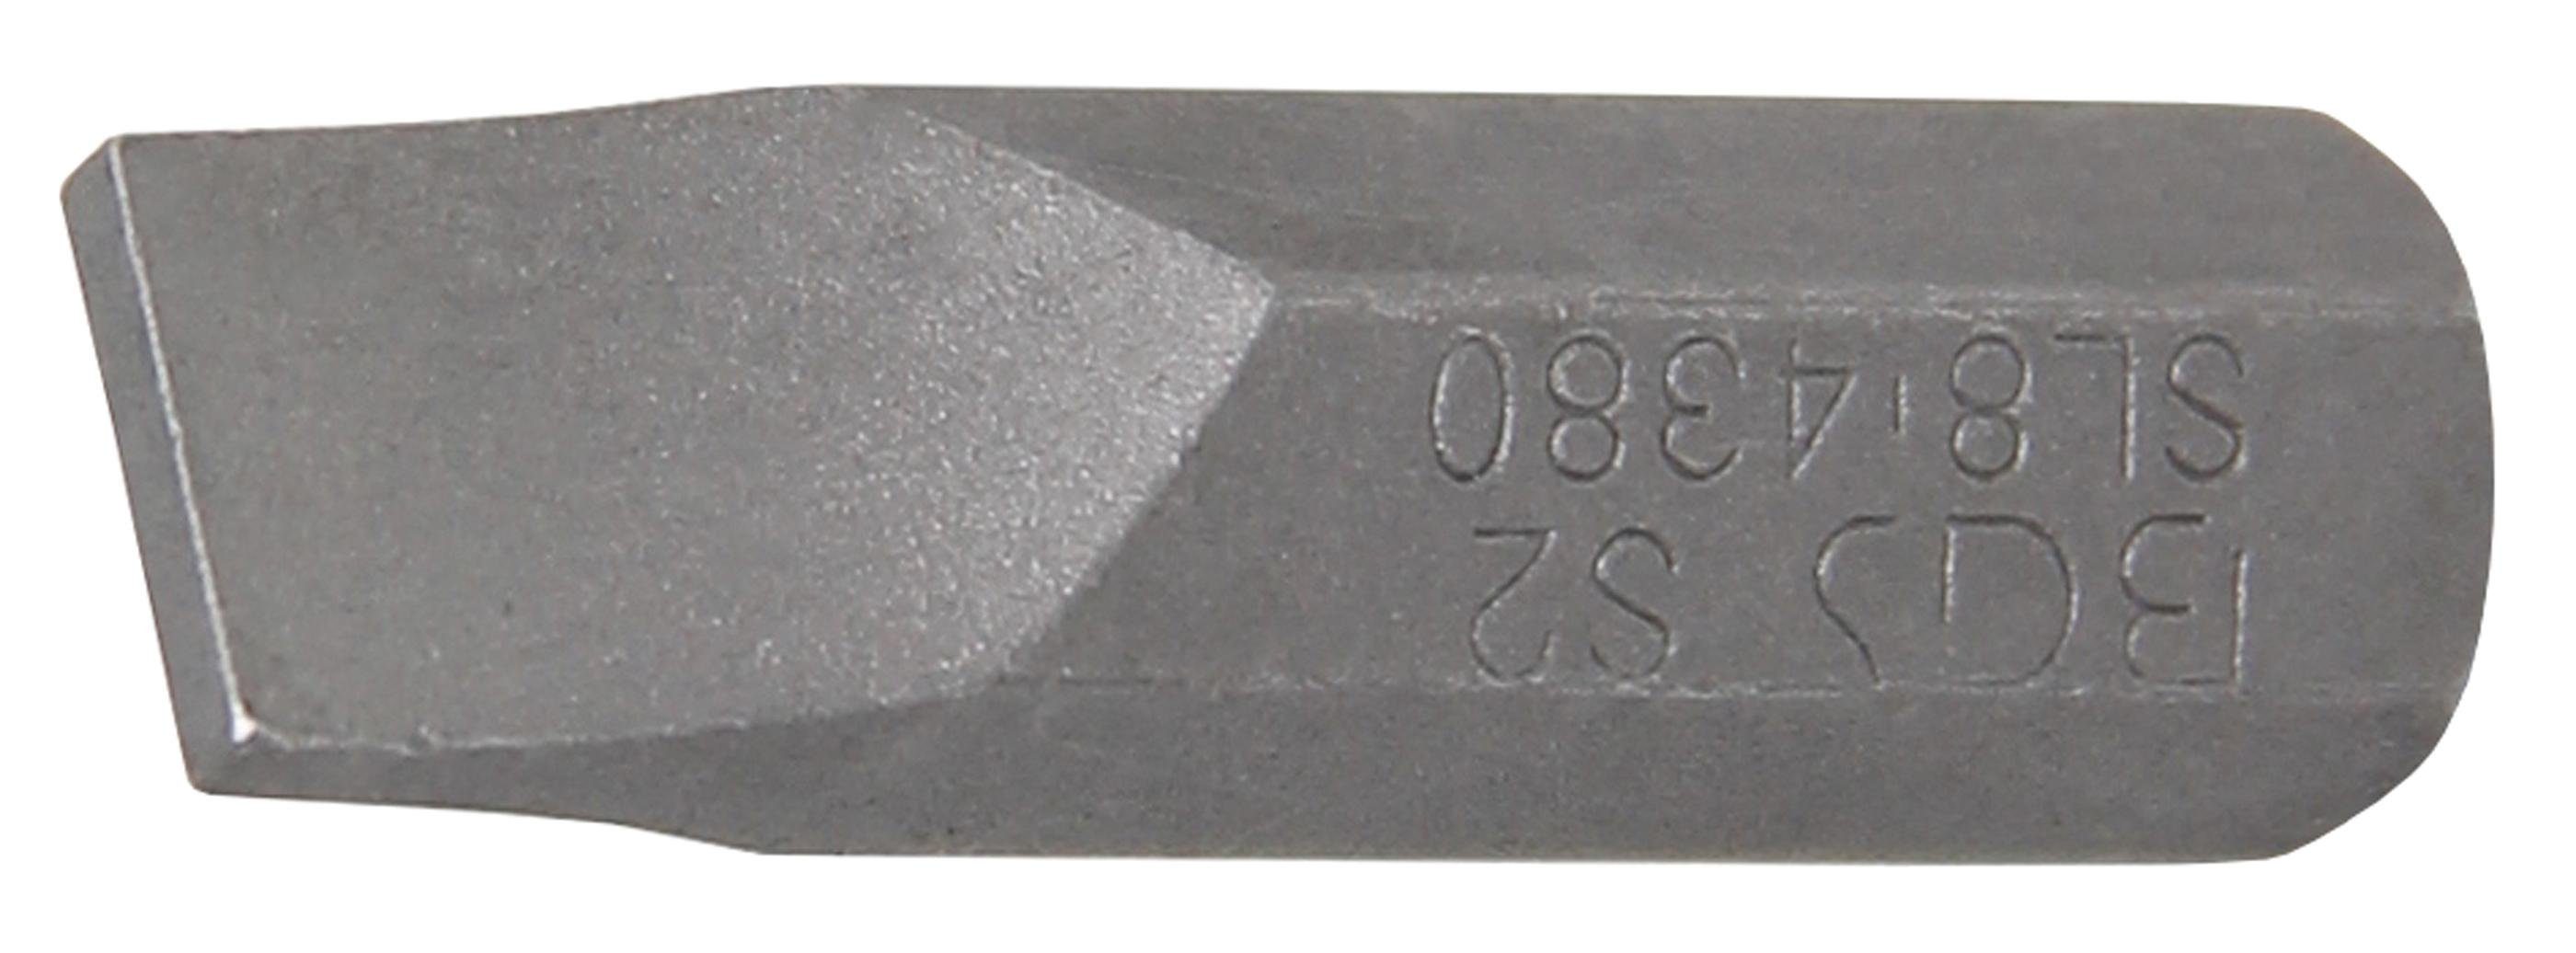 BGS technic Bit-Schraubendreher Bit, Länge 30 mm, Antrieb Außensechskant 8 mm (5/16), Schlitz 8 mm